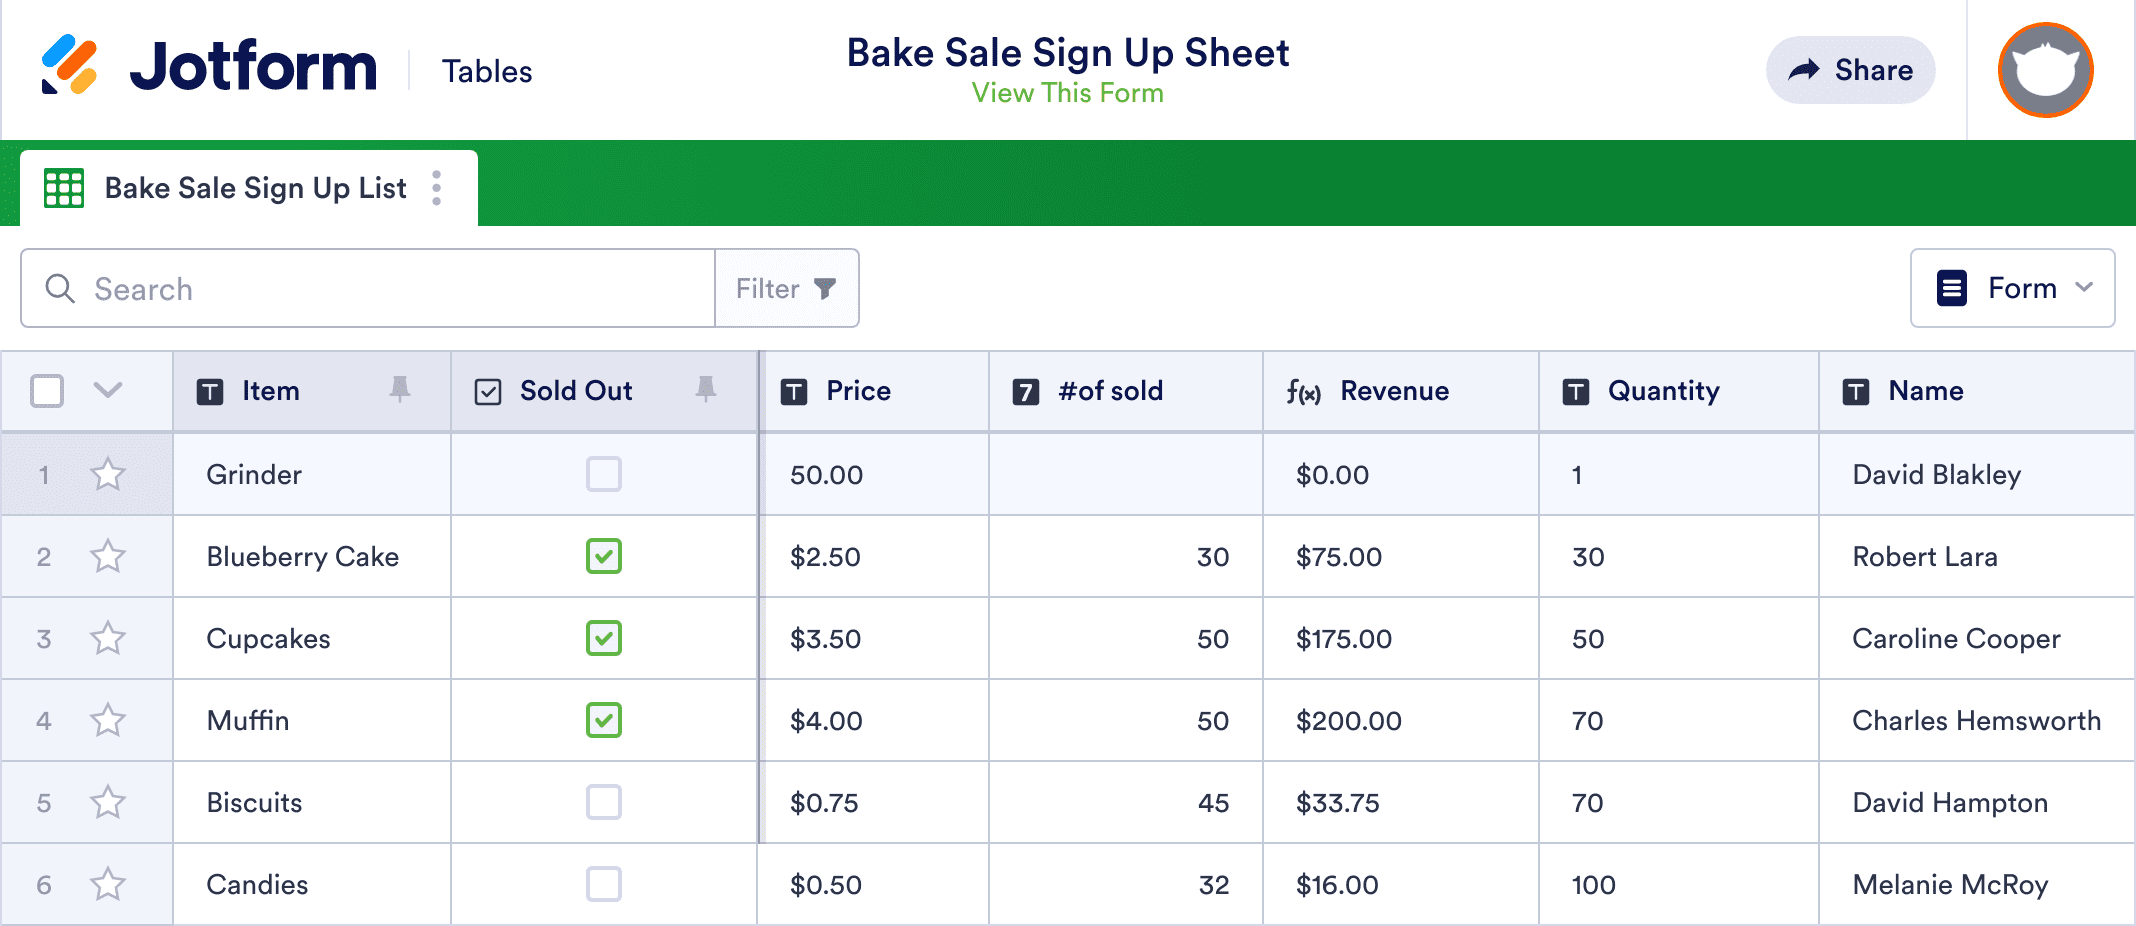 Bake Sale Sign Up Sheet